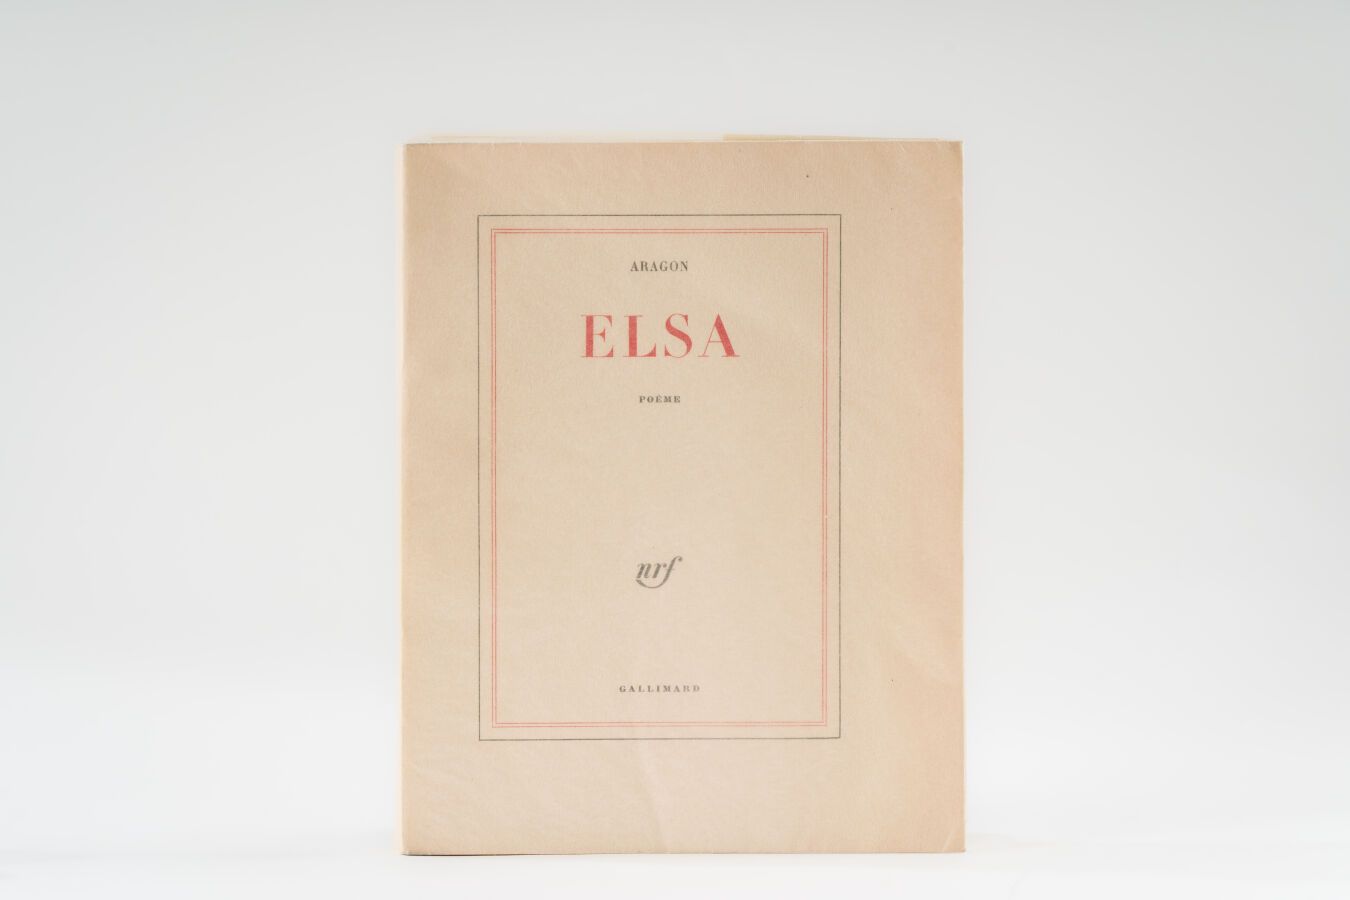 Null 28. ARAGÓN (Luis). 
Elsa. Poème. París, Gallimard, 1959, in-8 cuadrado, rús&hellip;